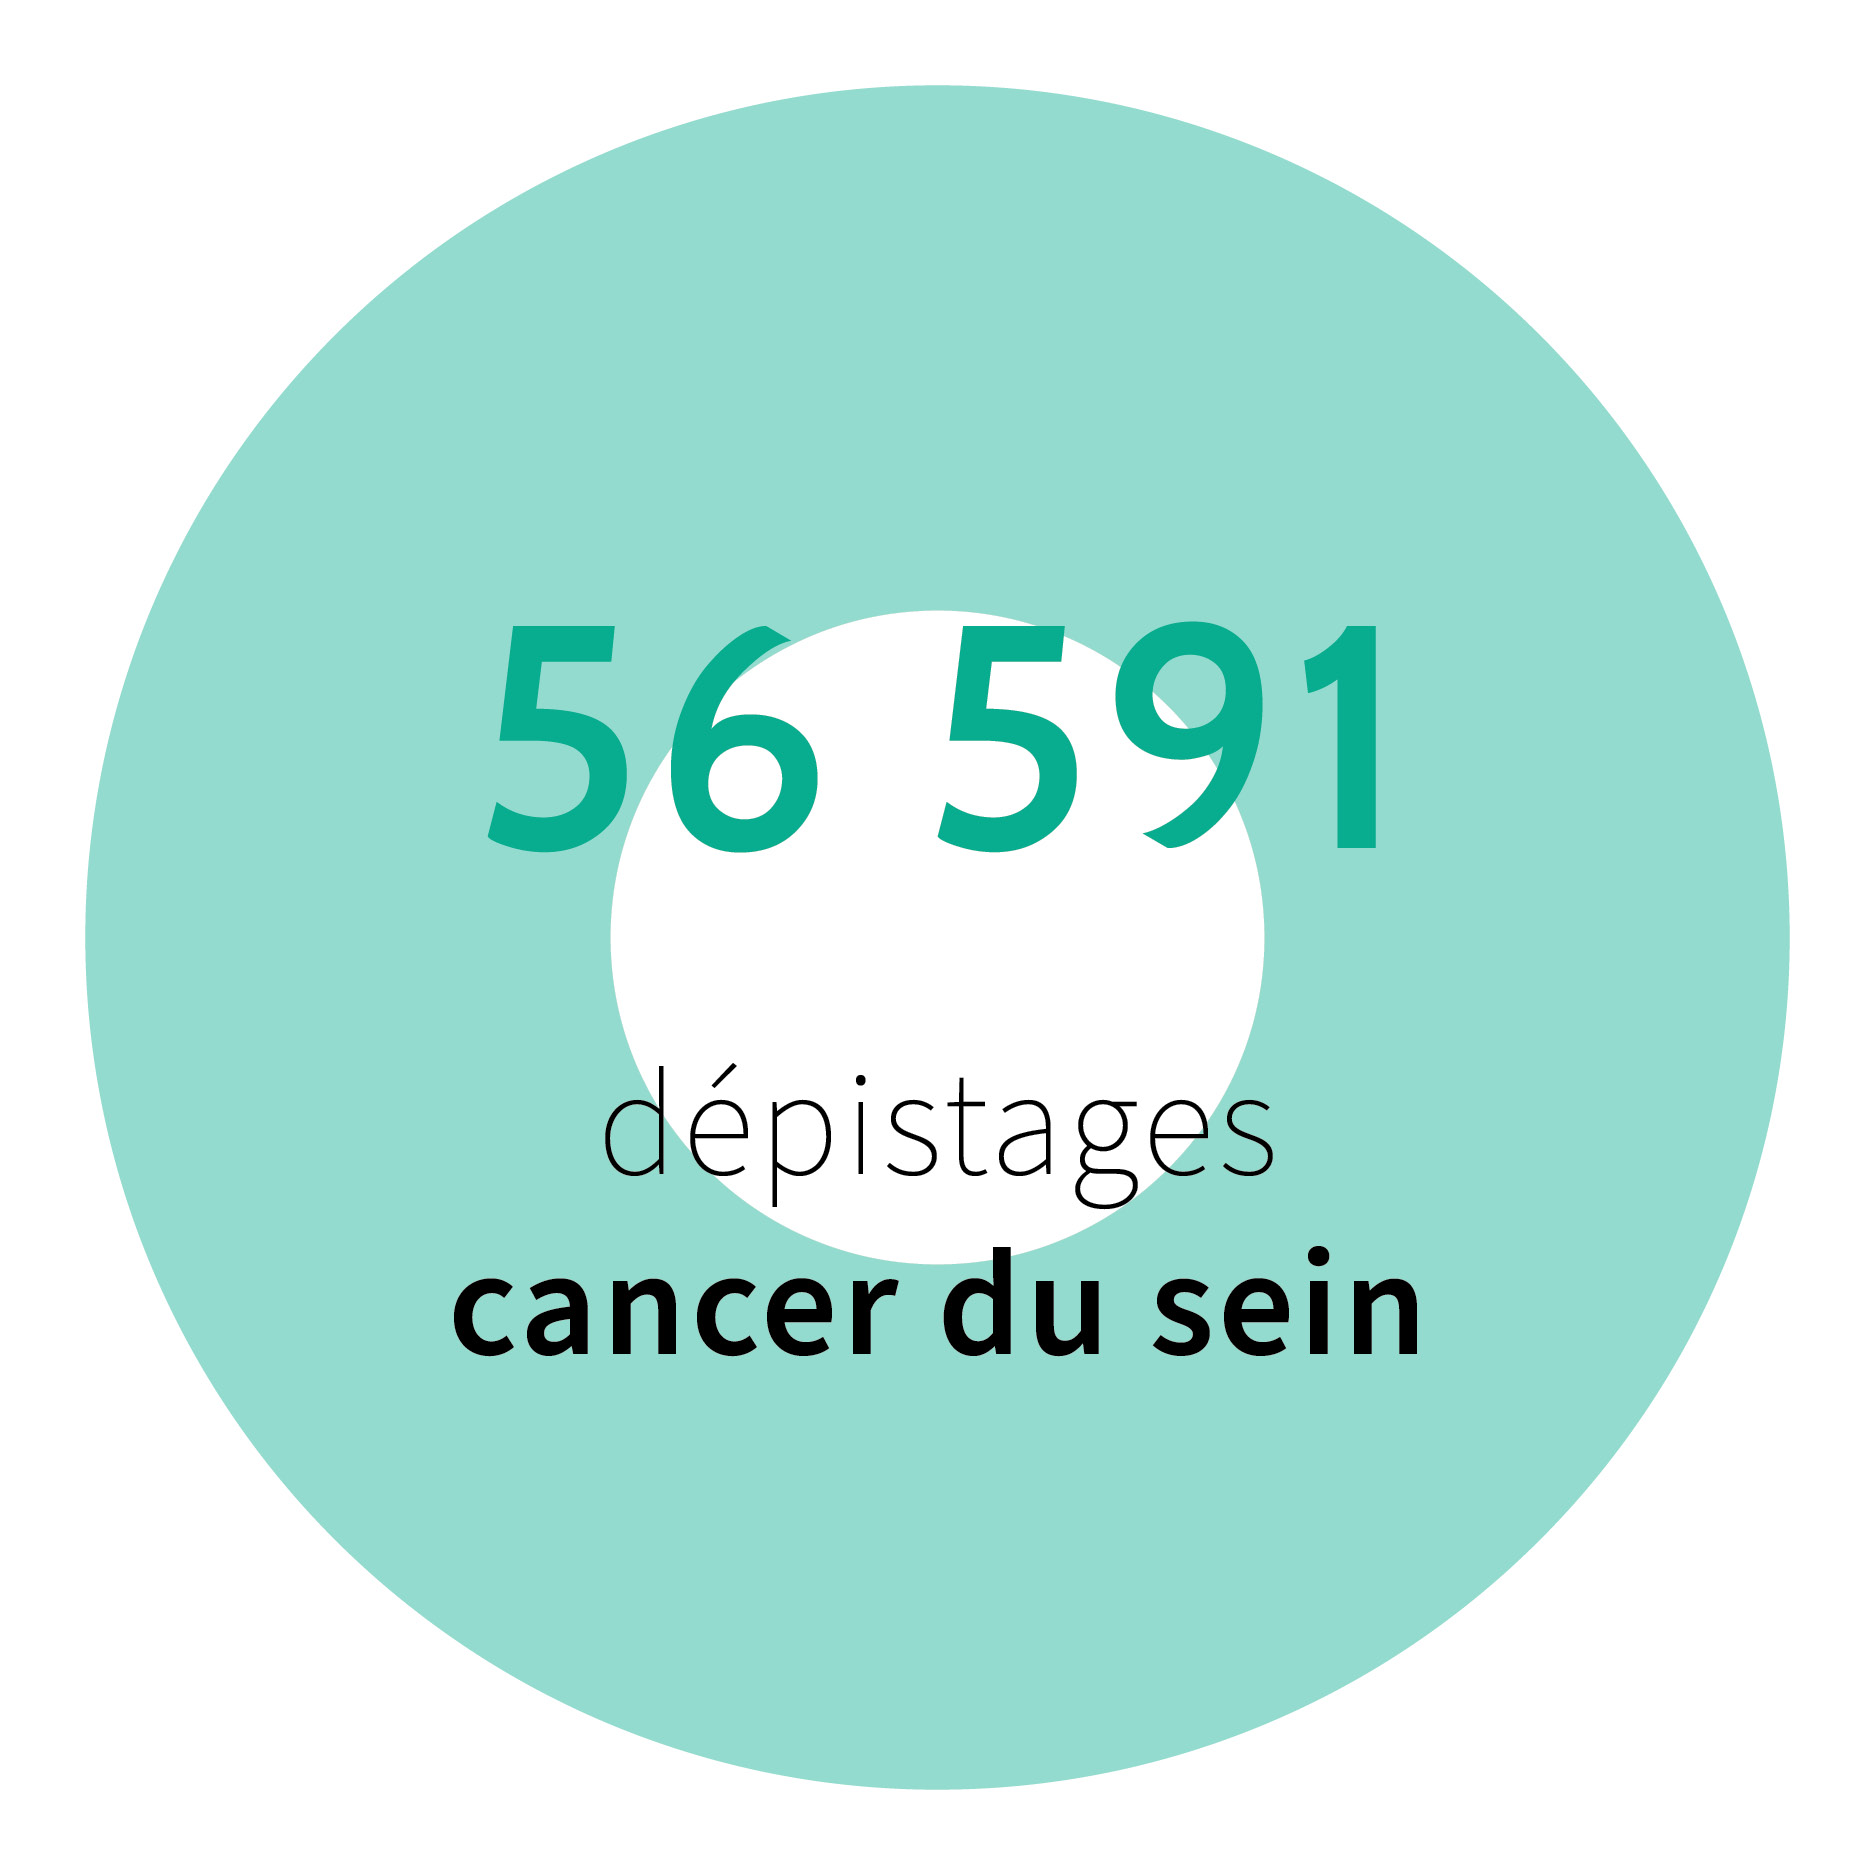 56 591 dépistages cancer du sein